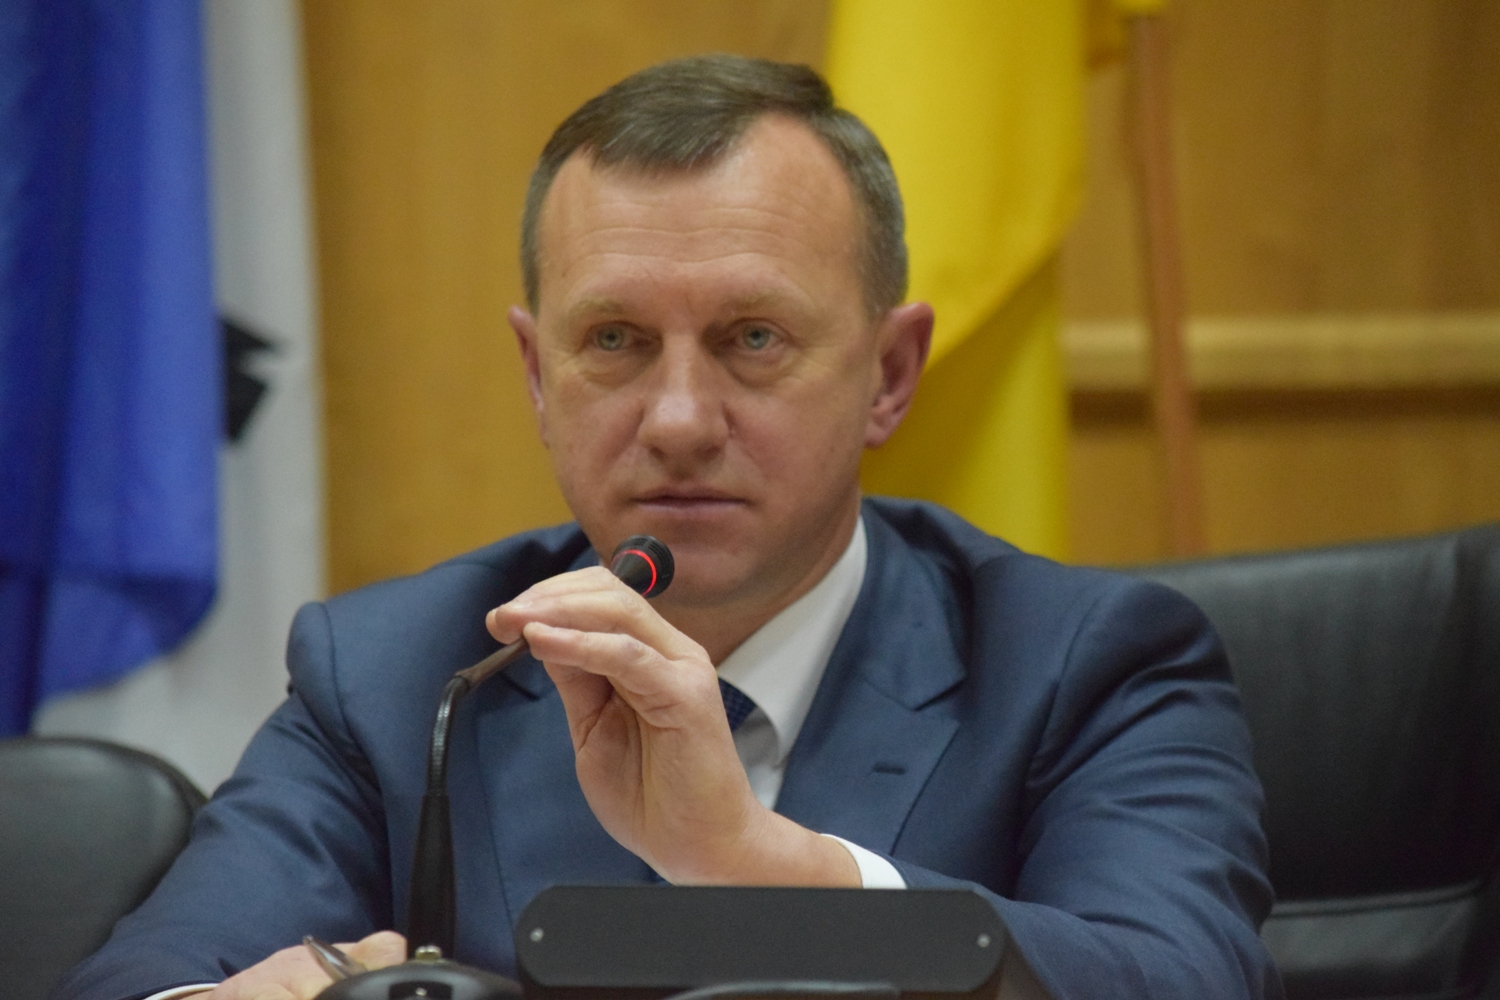 Ужгородський міський голова Богдан Андріїв публічно звітував перед громадою про роботу у 2018 році